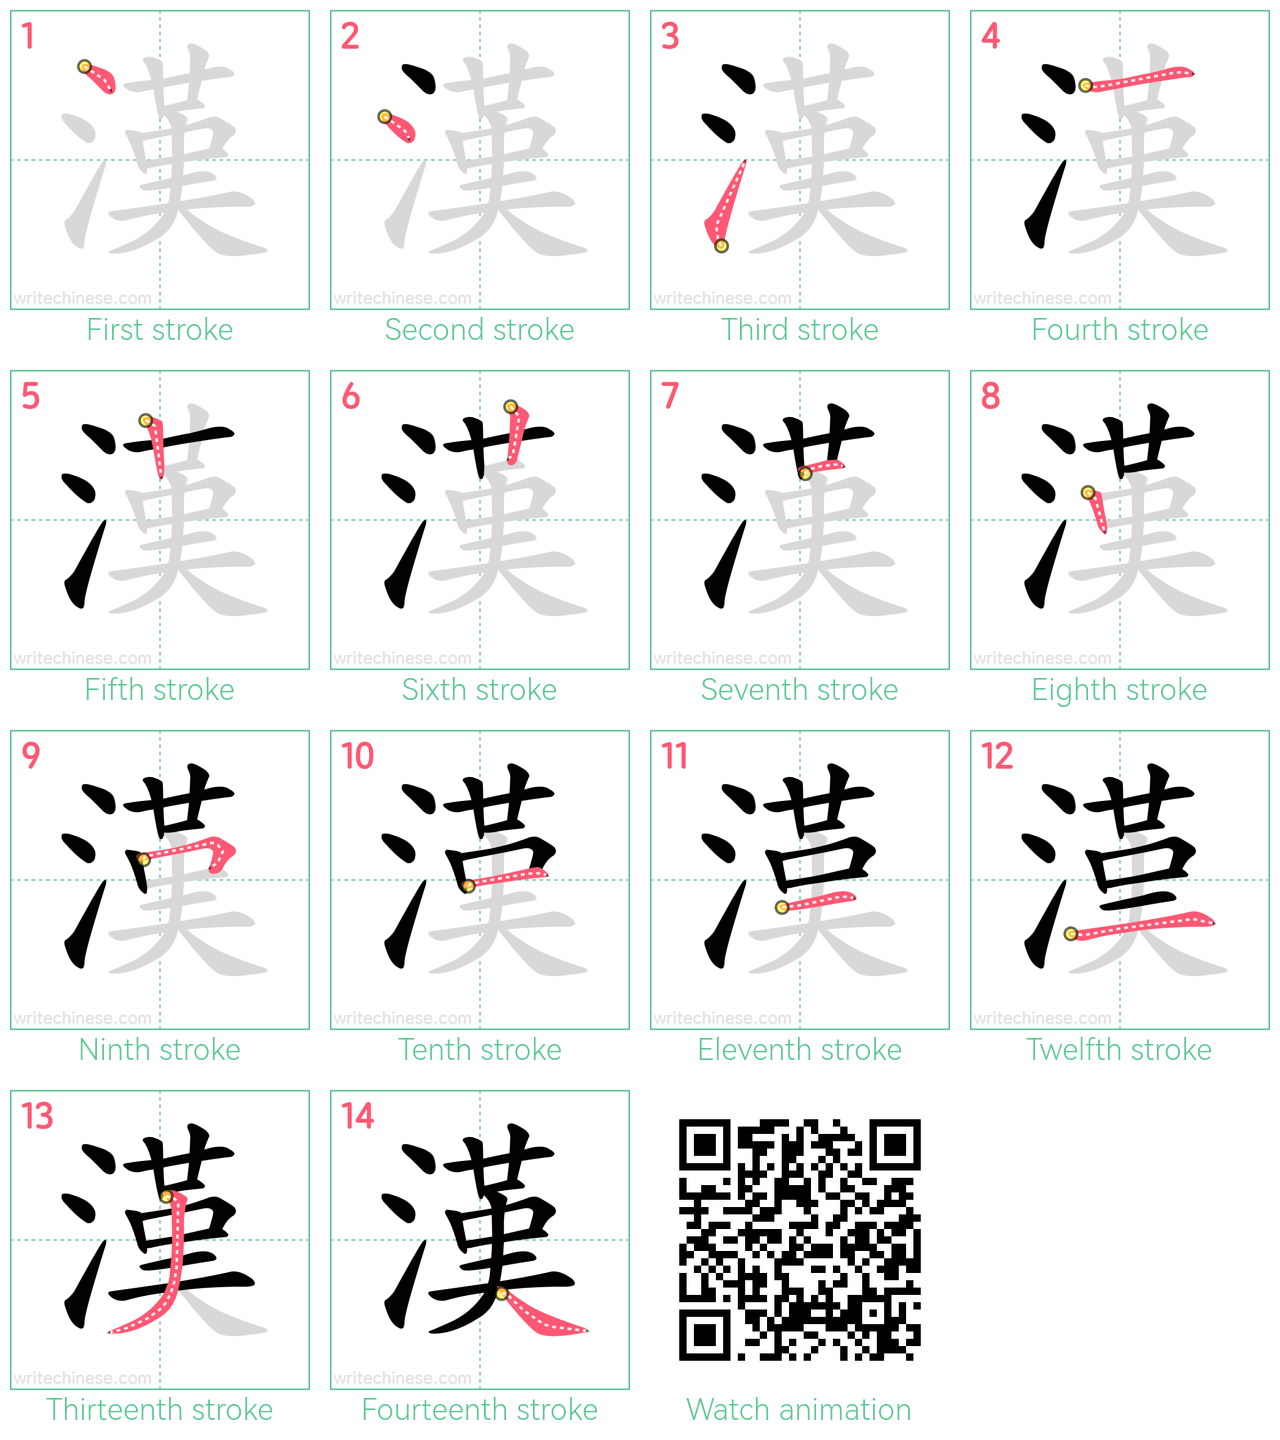 漢 step-by-step stroke order diagrams